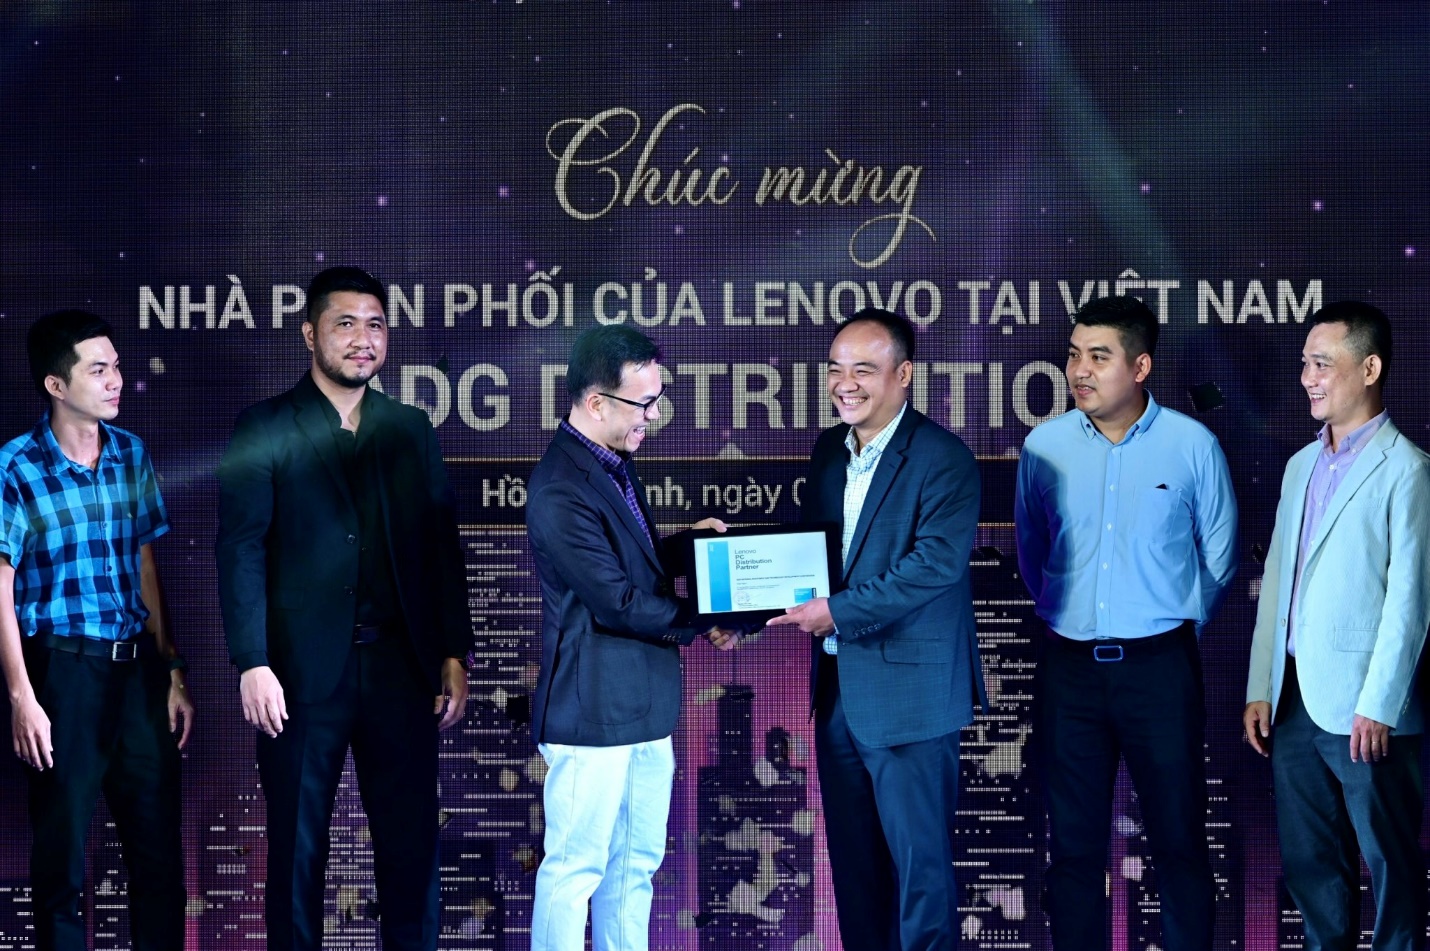 ADG trở thành nhà phân phối chính thức của Lenovo tại Việt Nam - Ảnh 1.